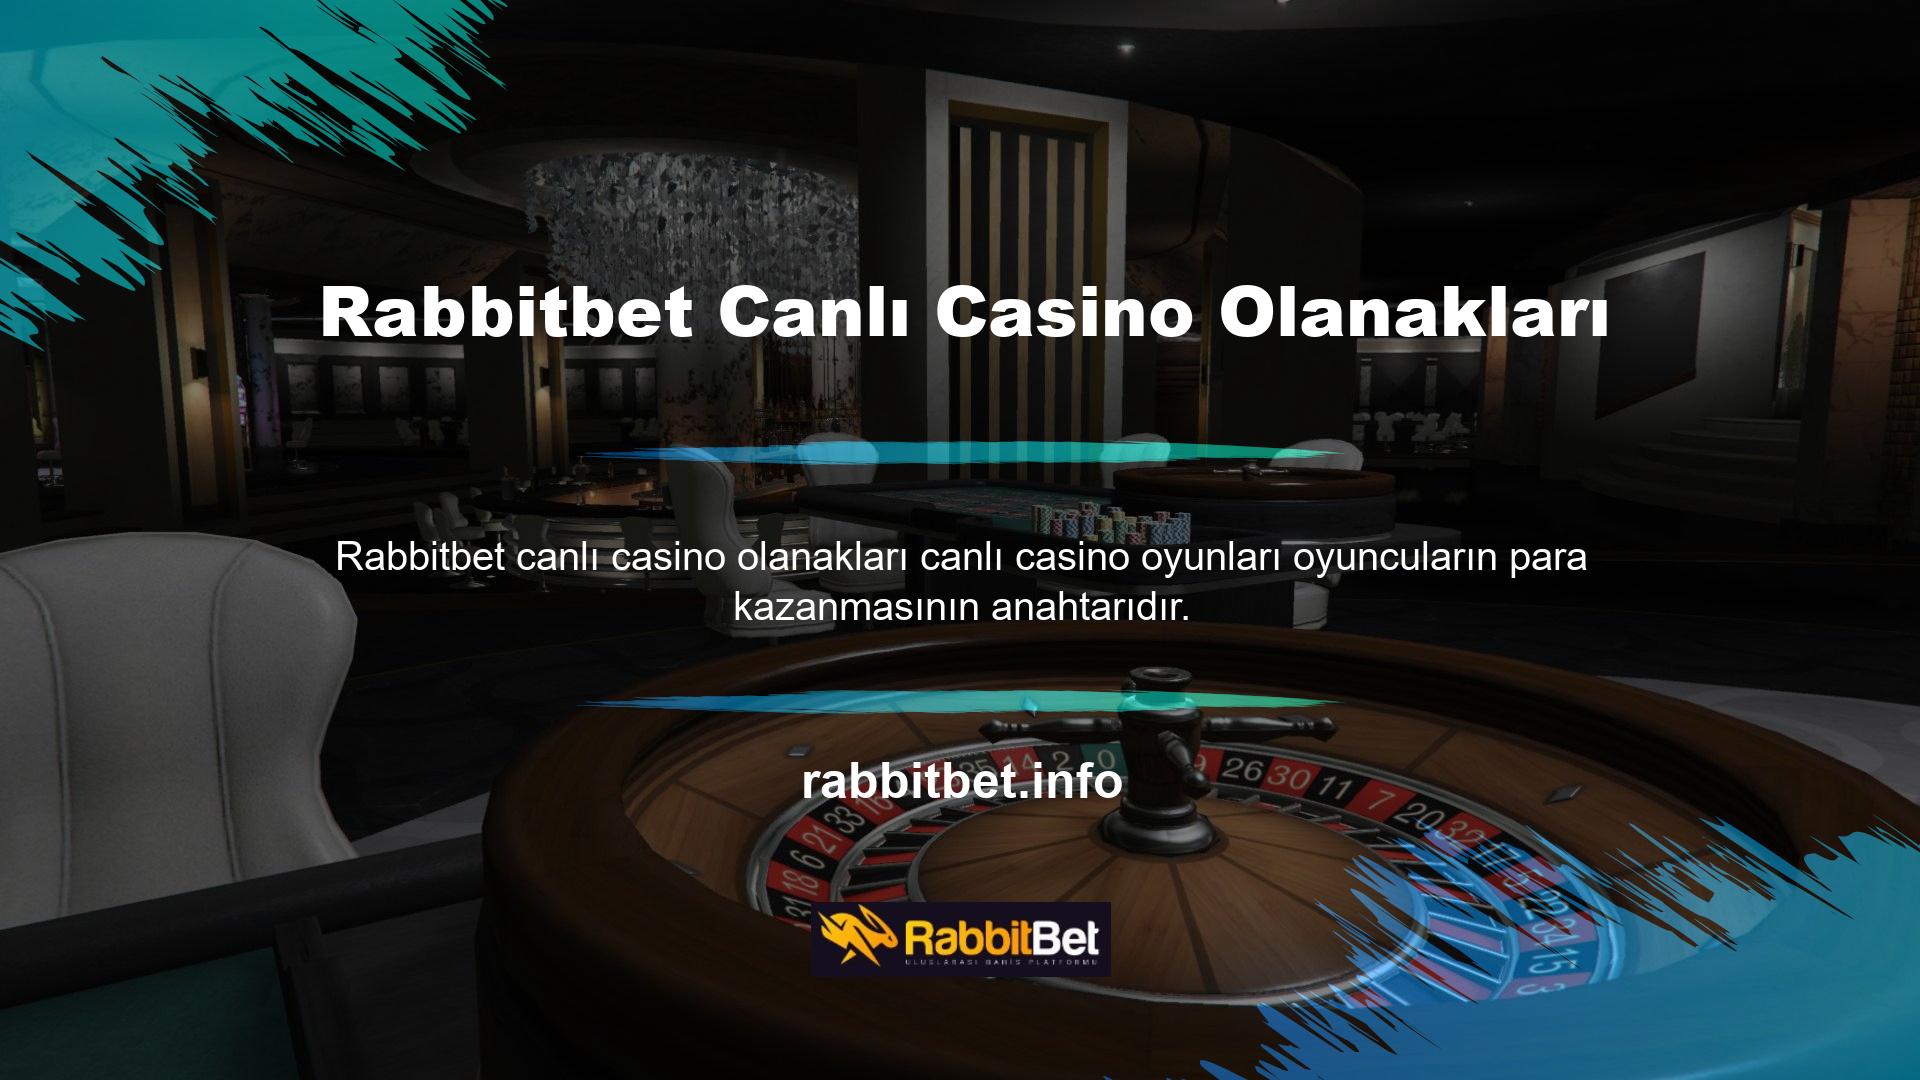 Tüm canlı oyunlara Rabbitbet Canlı Casino Oyunları üzerinden ulaşabilirsiniz